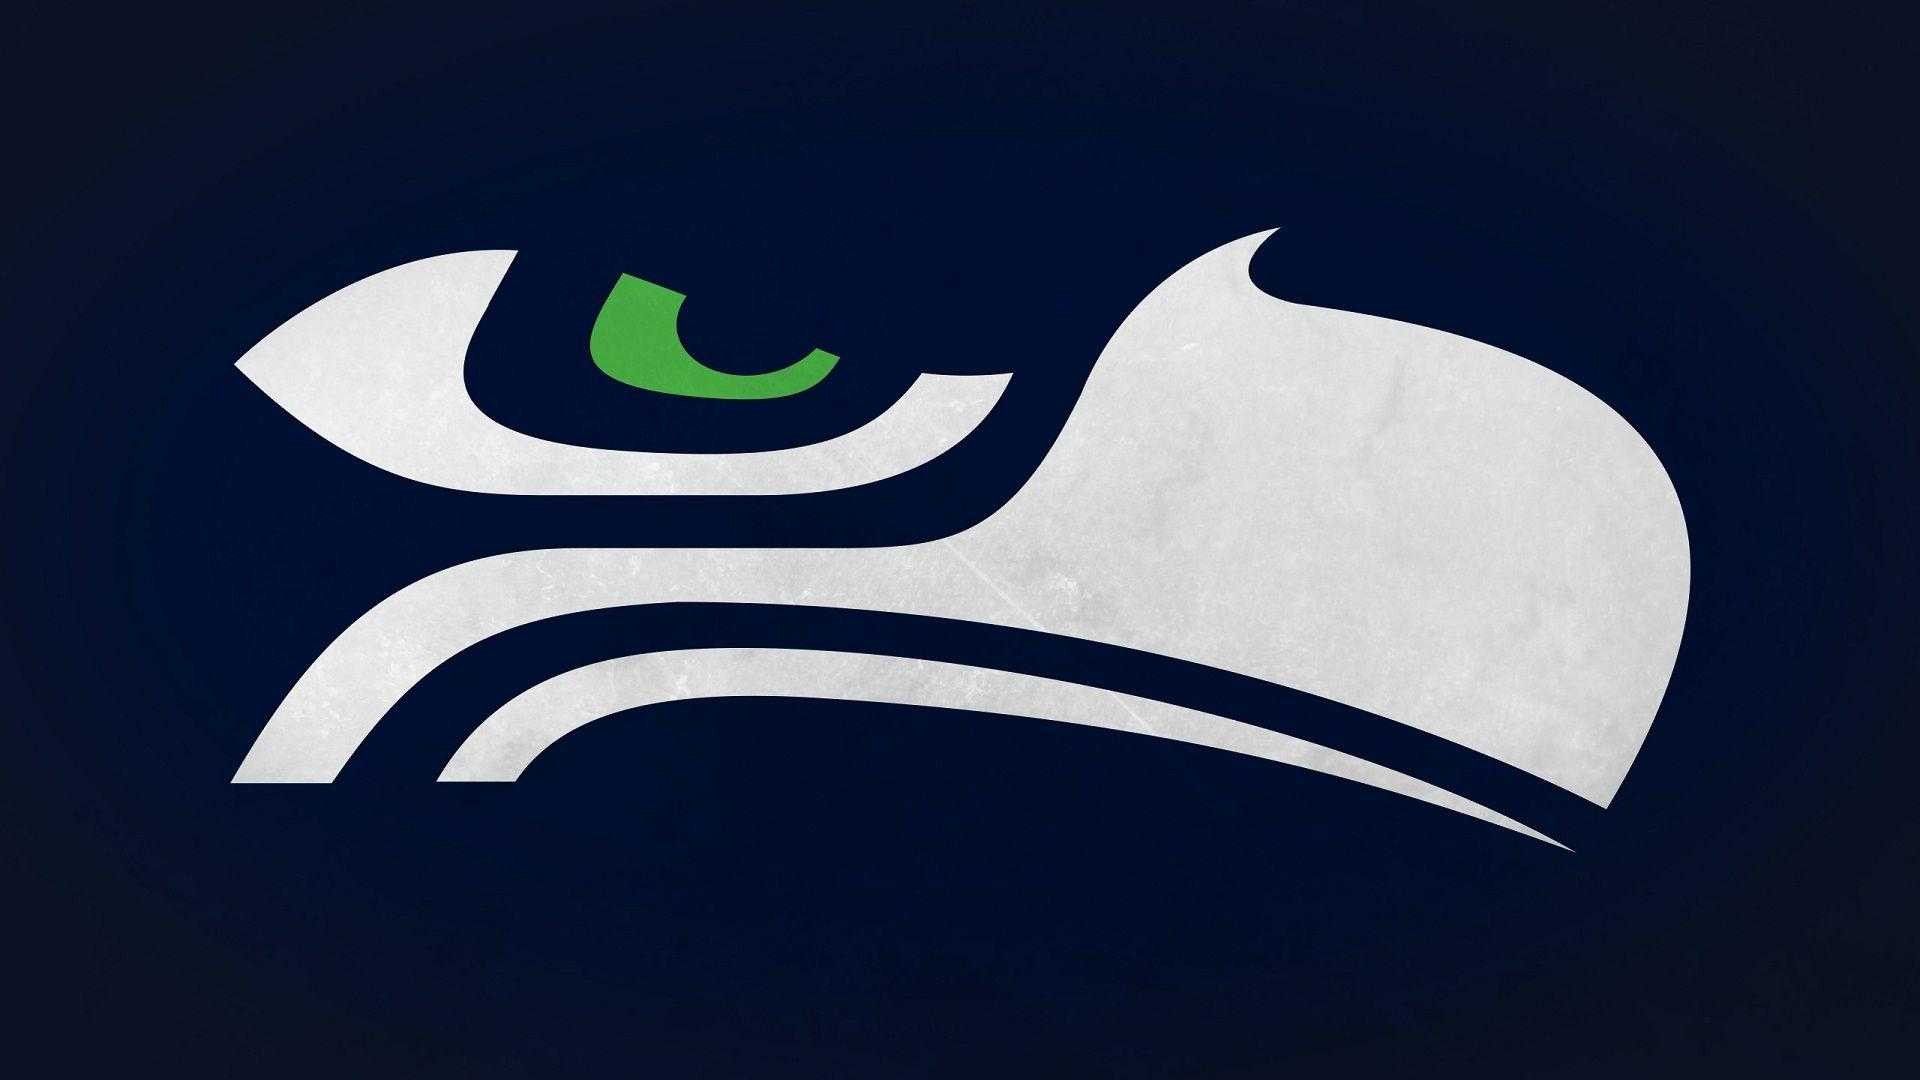 Seattle Seahawks Wallpaper 2021 NFL Football Wallpapers